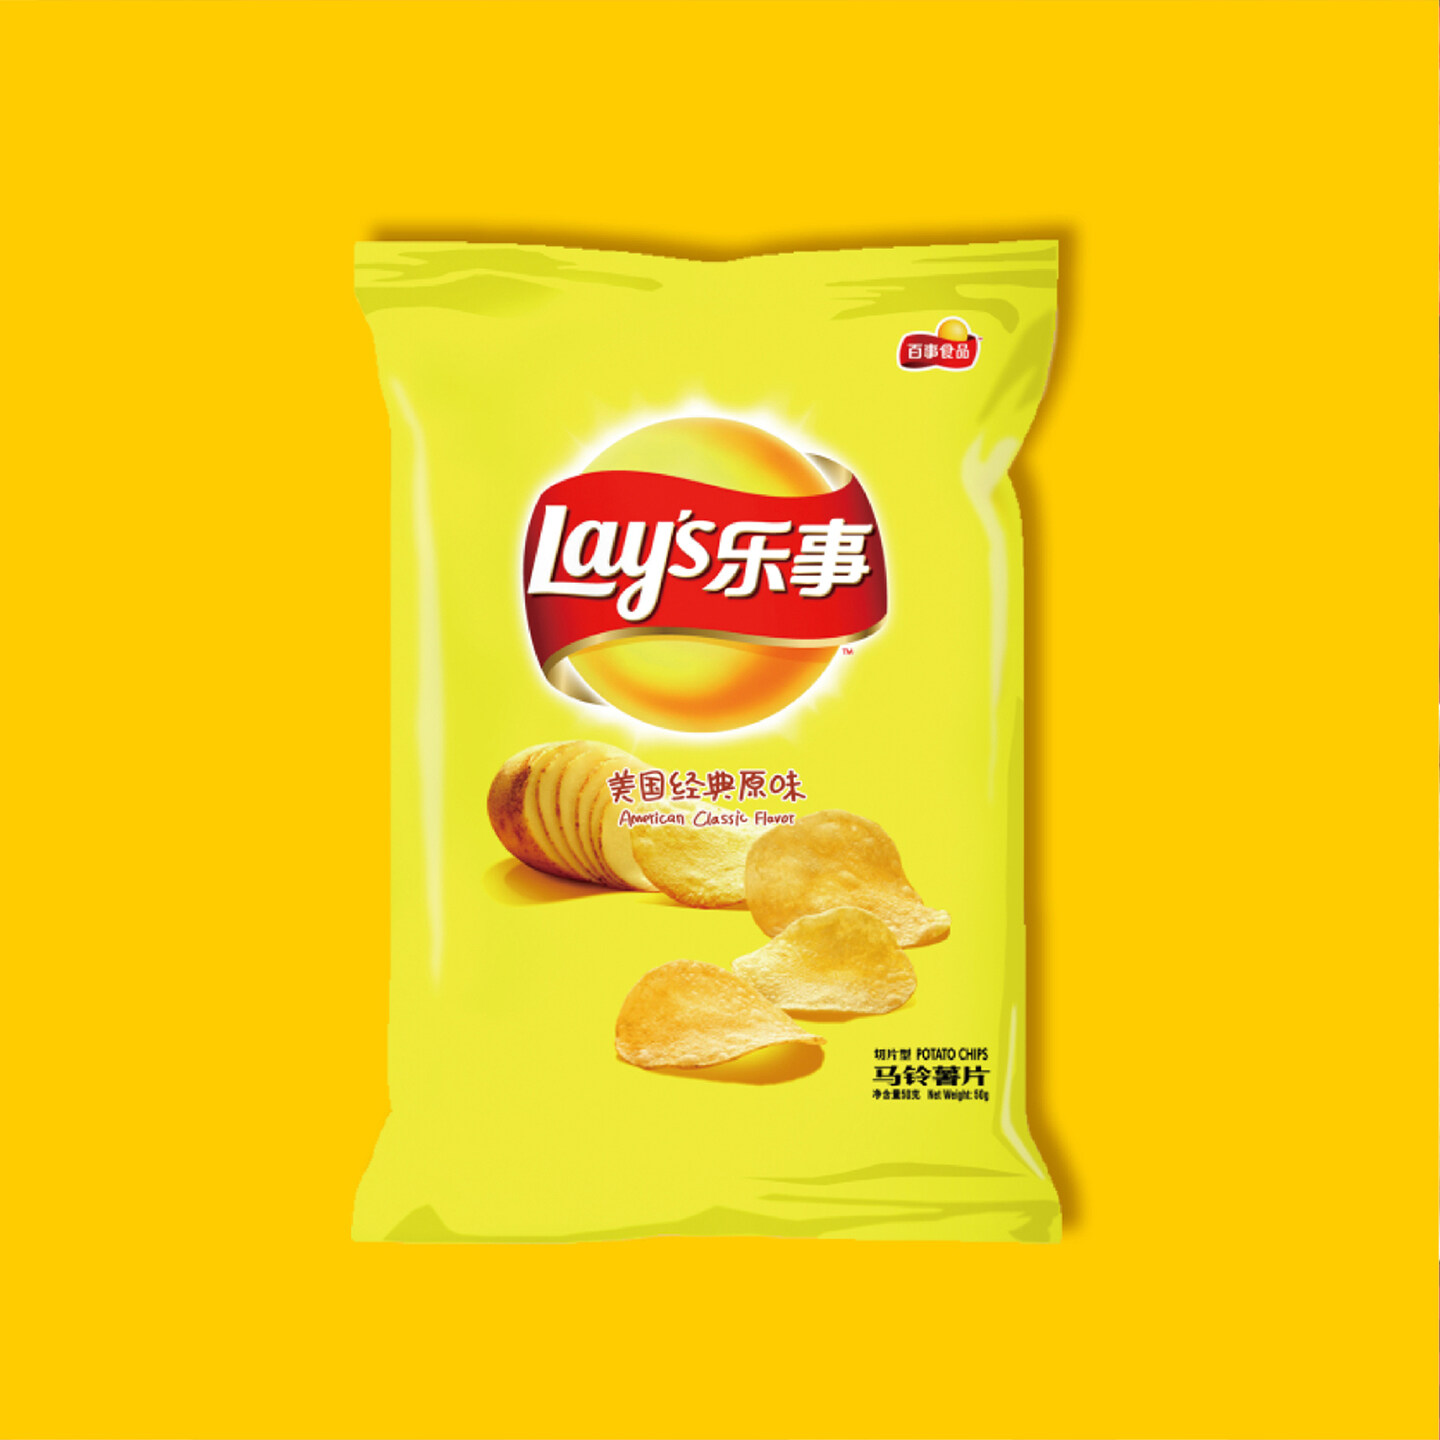 休闲小食品包装设计-乐事薯片品牌形象升级设计